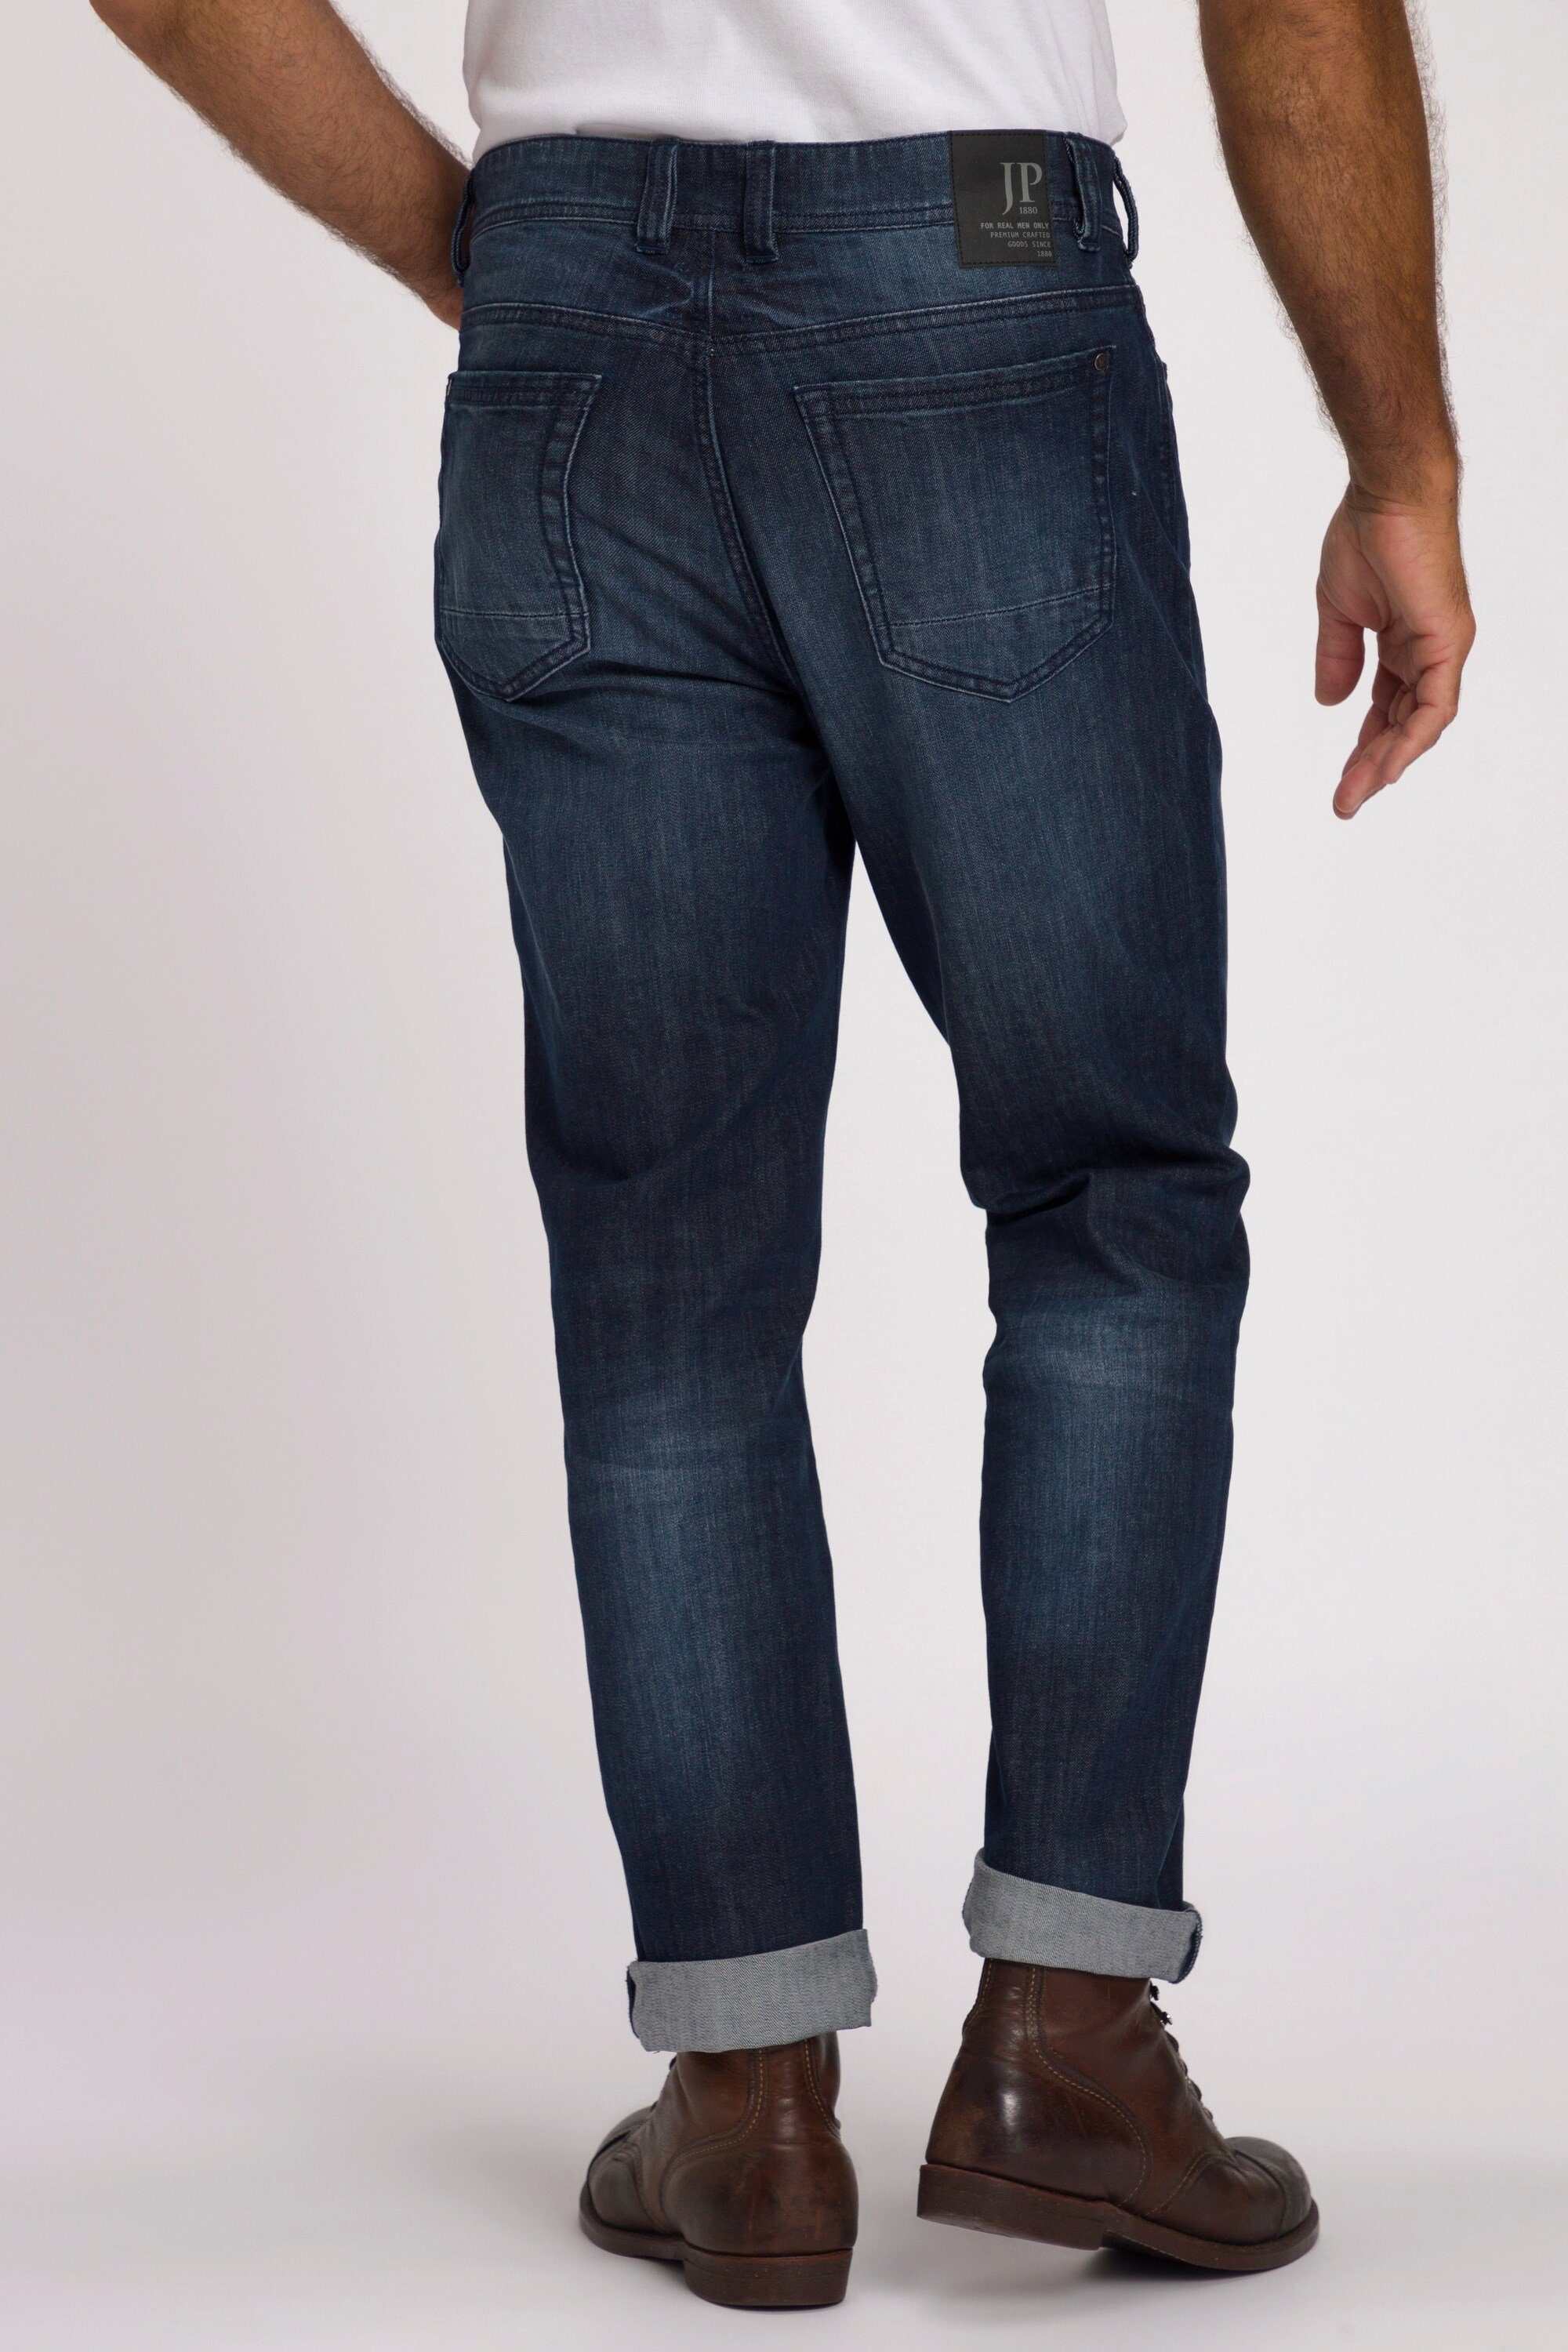 JP1880 Cargohose Fit denim Regular Denim Jeans blue dark 5-Pocket Denim